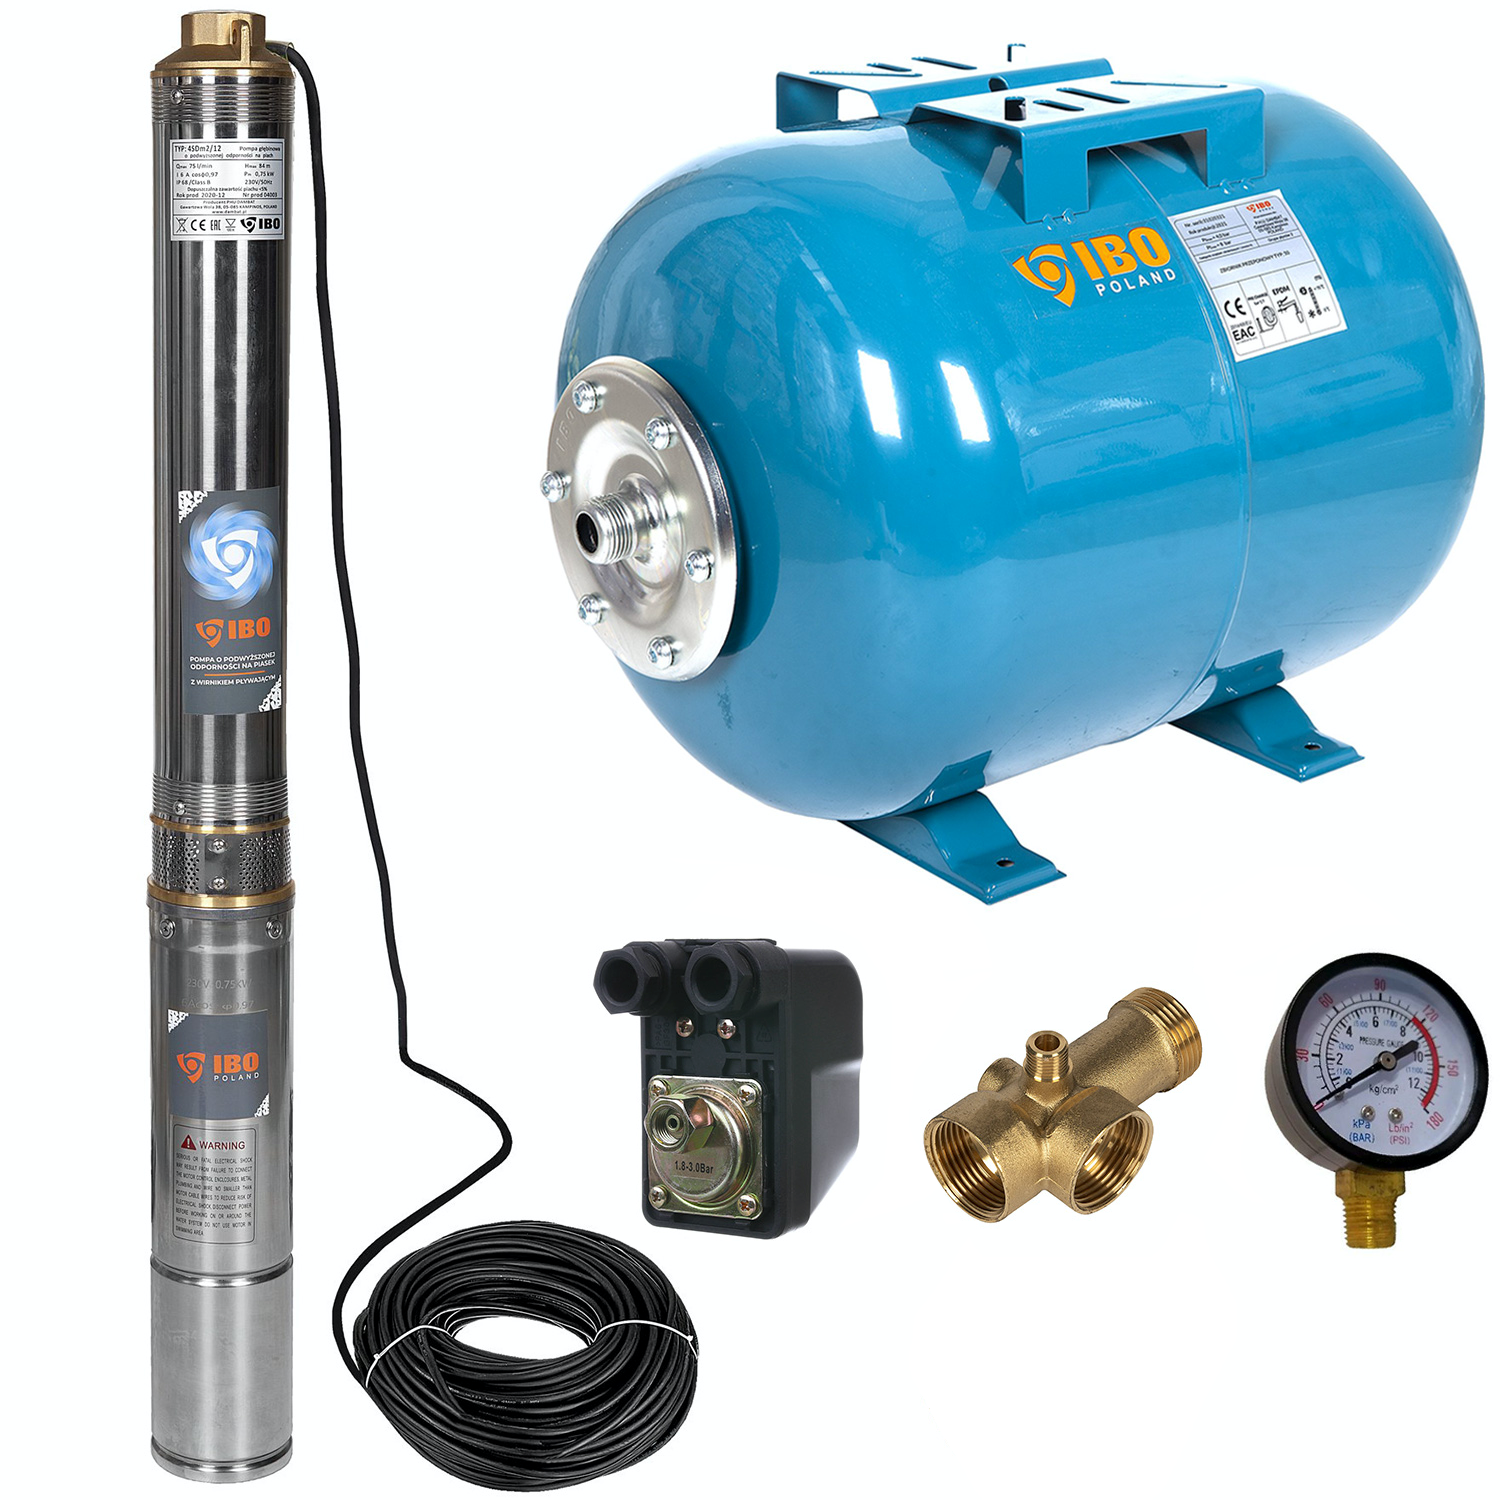 Kit hidrofor 50L cu pompa submersibila IBO Dambat 4SDM2/12, 0.75kW, debit 80l/min, H refulare 85m, racord 1.5 toli, rezistenta la nisip